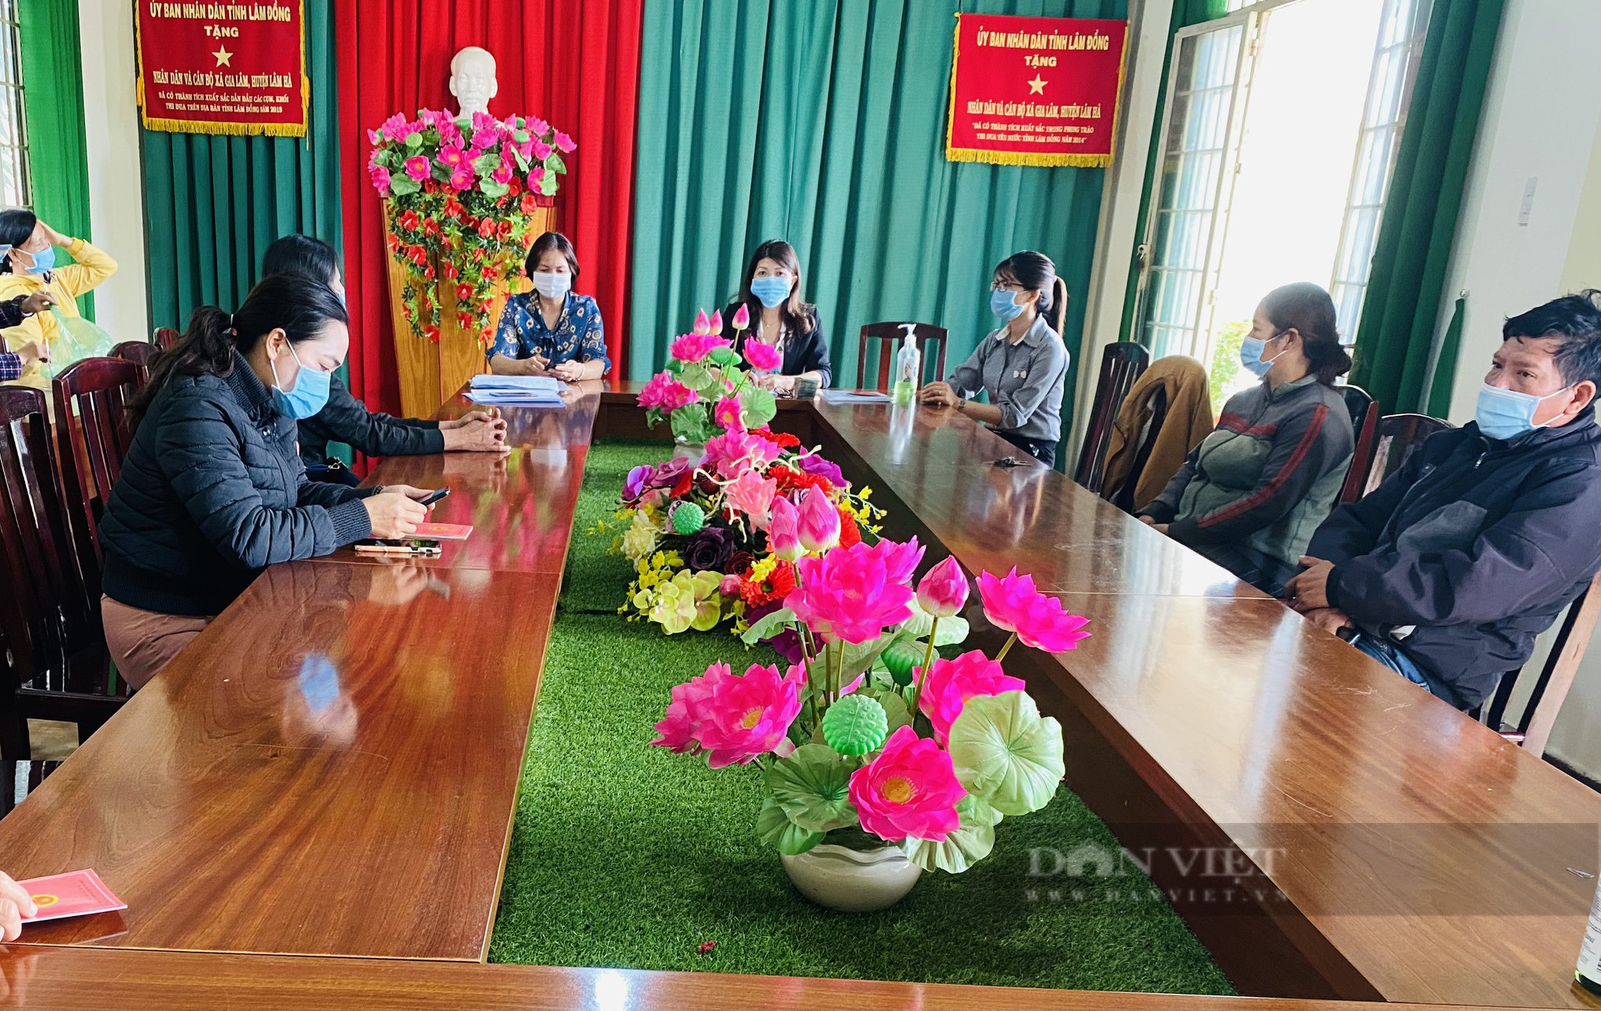 Lâm Đồng: HND huyện Lâm Hà giải ngân 200 triệu từ Quỹ HTND cho hội viên làm giàu - Ảnh 1.